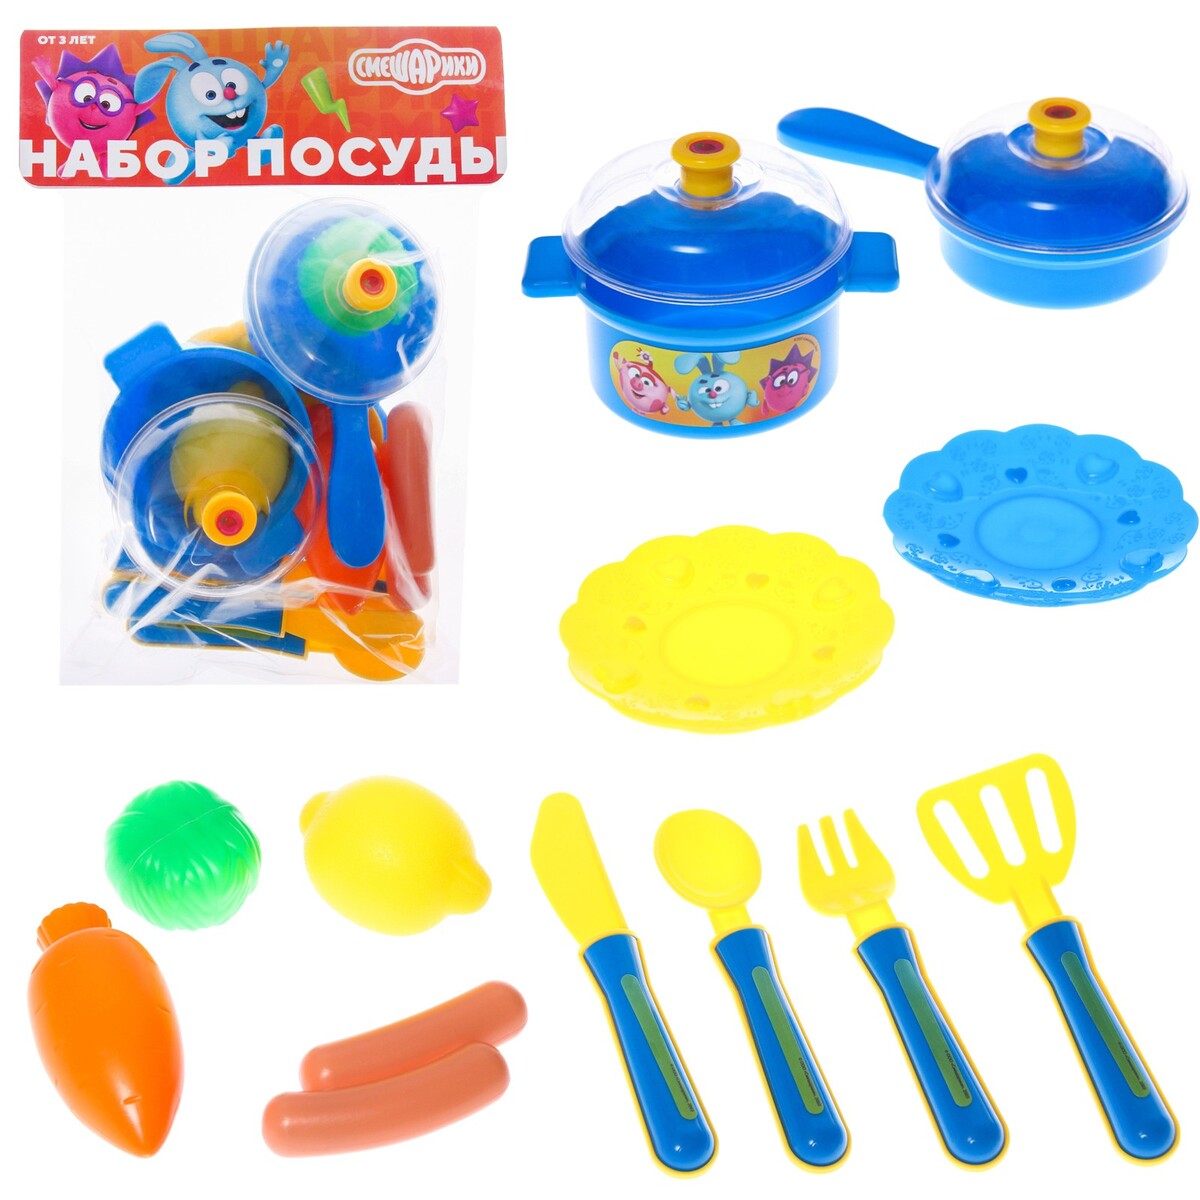 Набор посуды, смешарики, в пакете подарочный набор первоклассника для мальчика 5 предметов смешарики